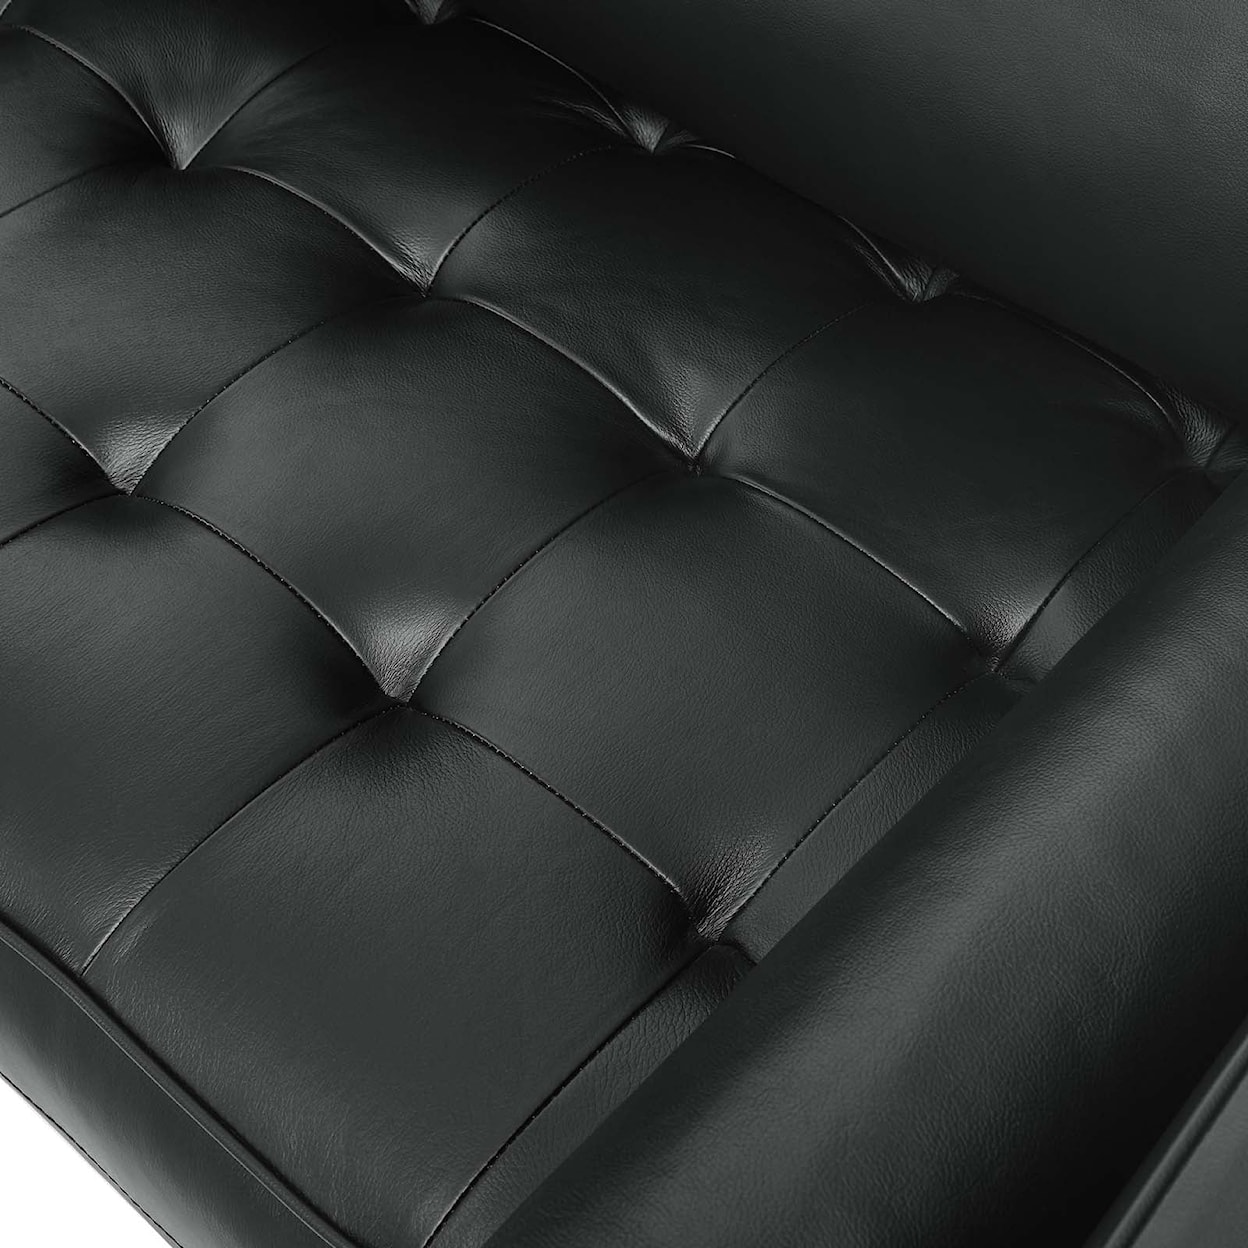 Modway Valour Valour Leather Sofa